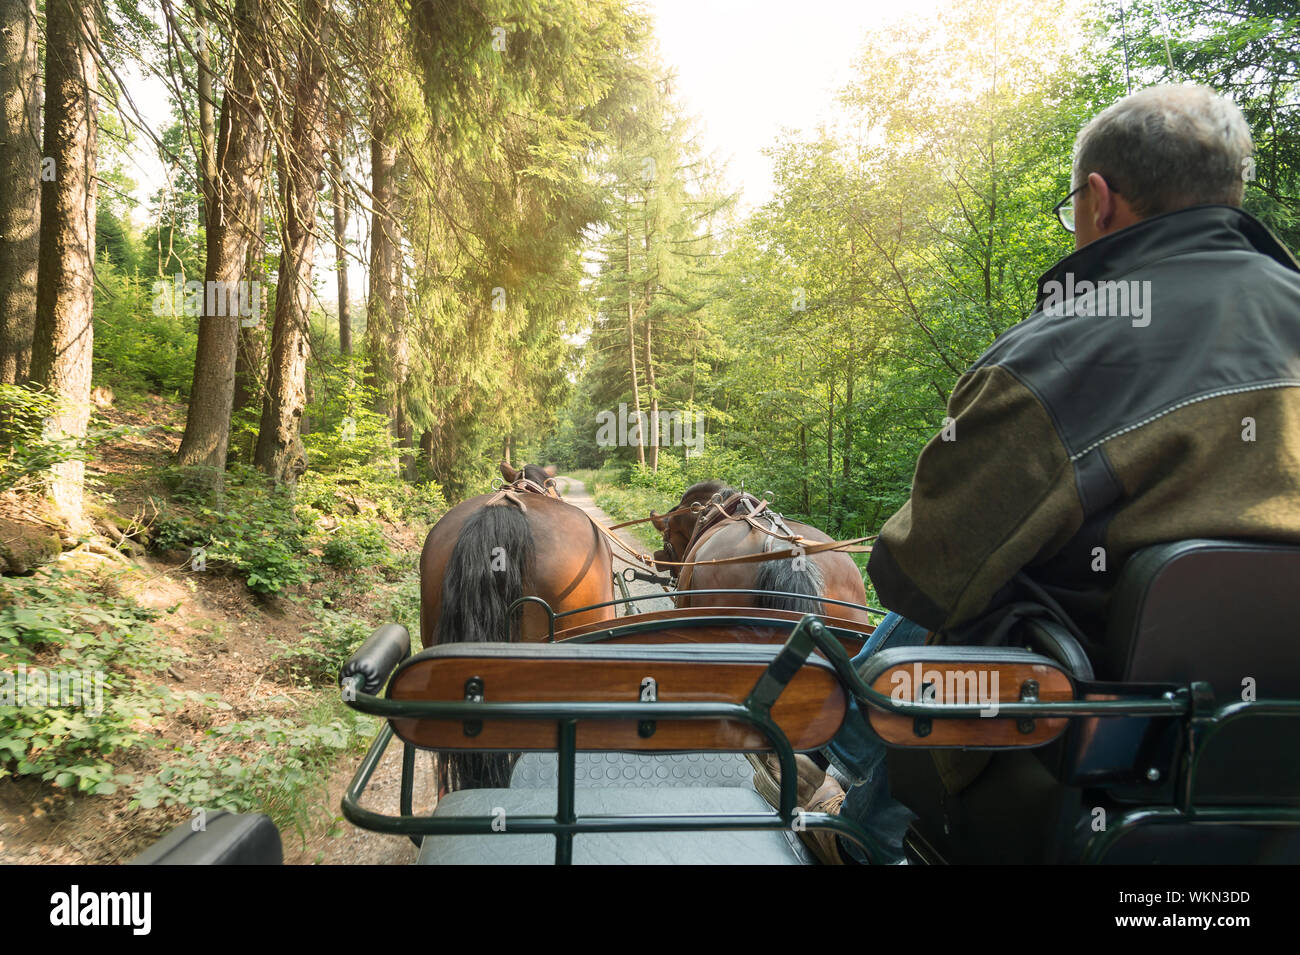 Ein Mann fährt eine Kutsche mit zwei Pferden (Sächsische Thüringer schweren warmes Blut). Die Fahrt ist auf einem Waldweg. Sonne scheint durch die Baumkronen. Stockfoto